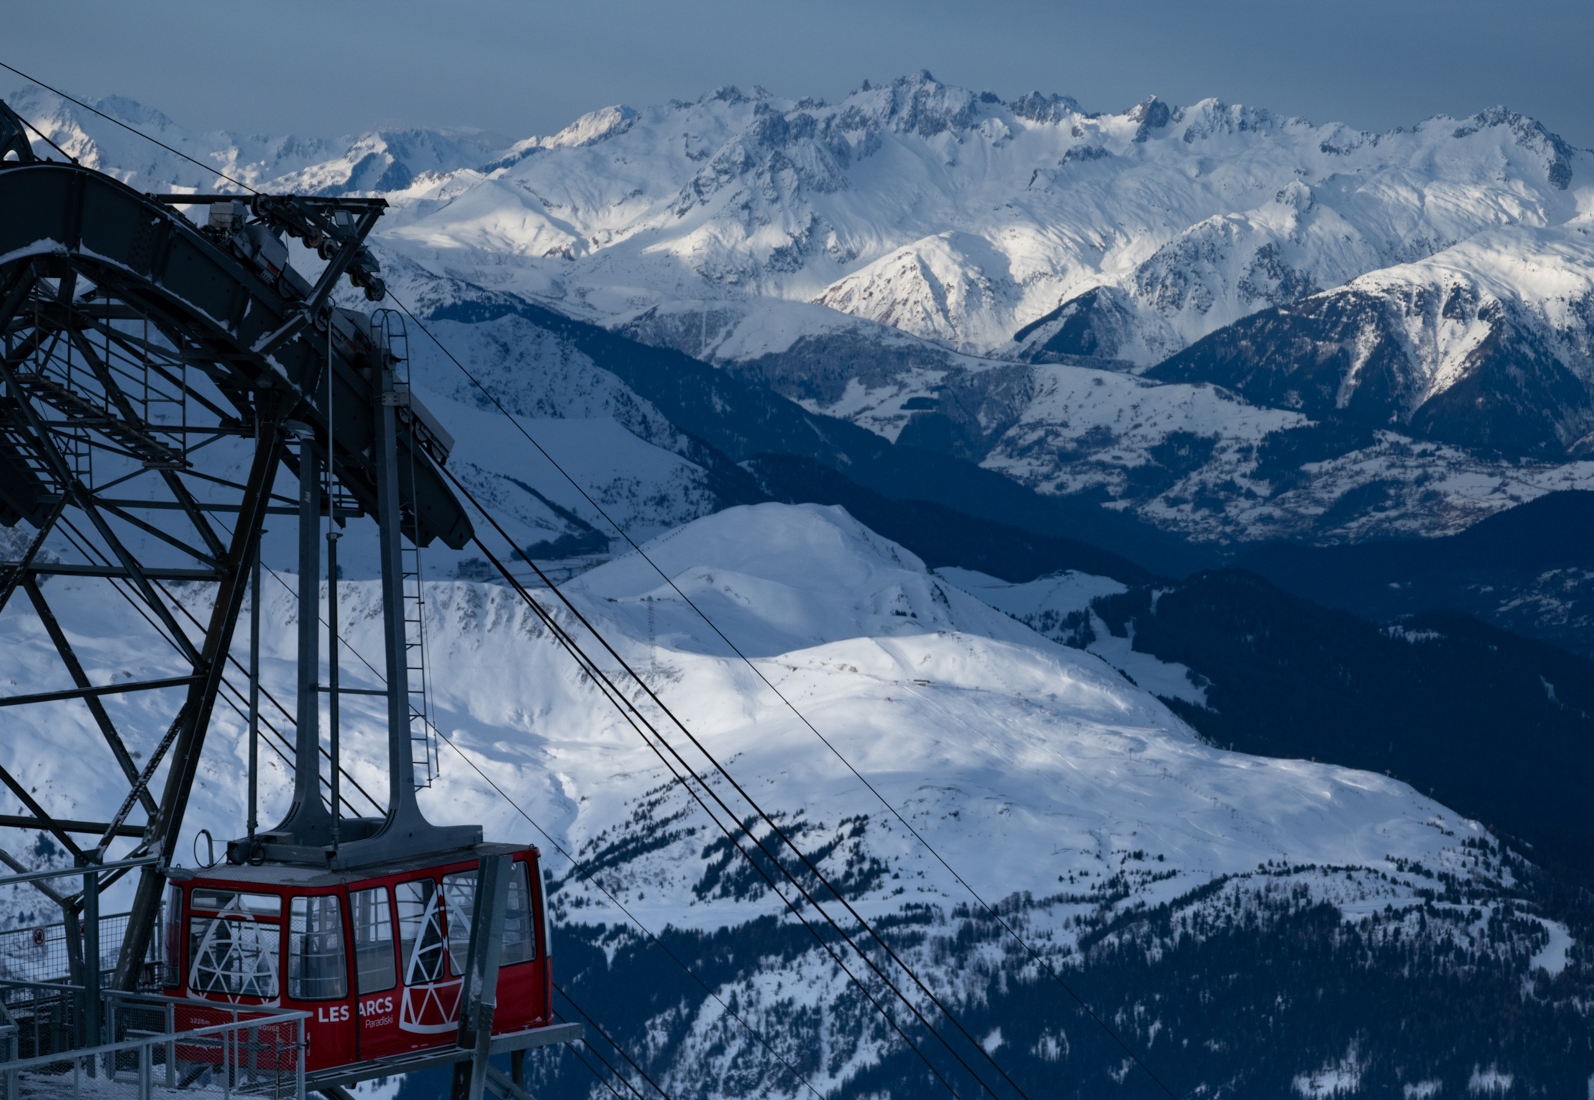 Les Alps Ski Resort